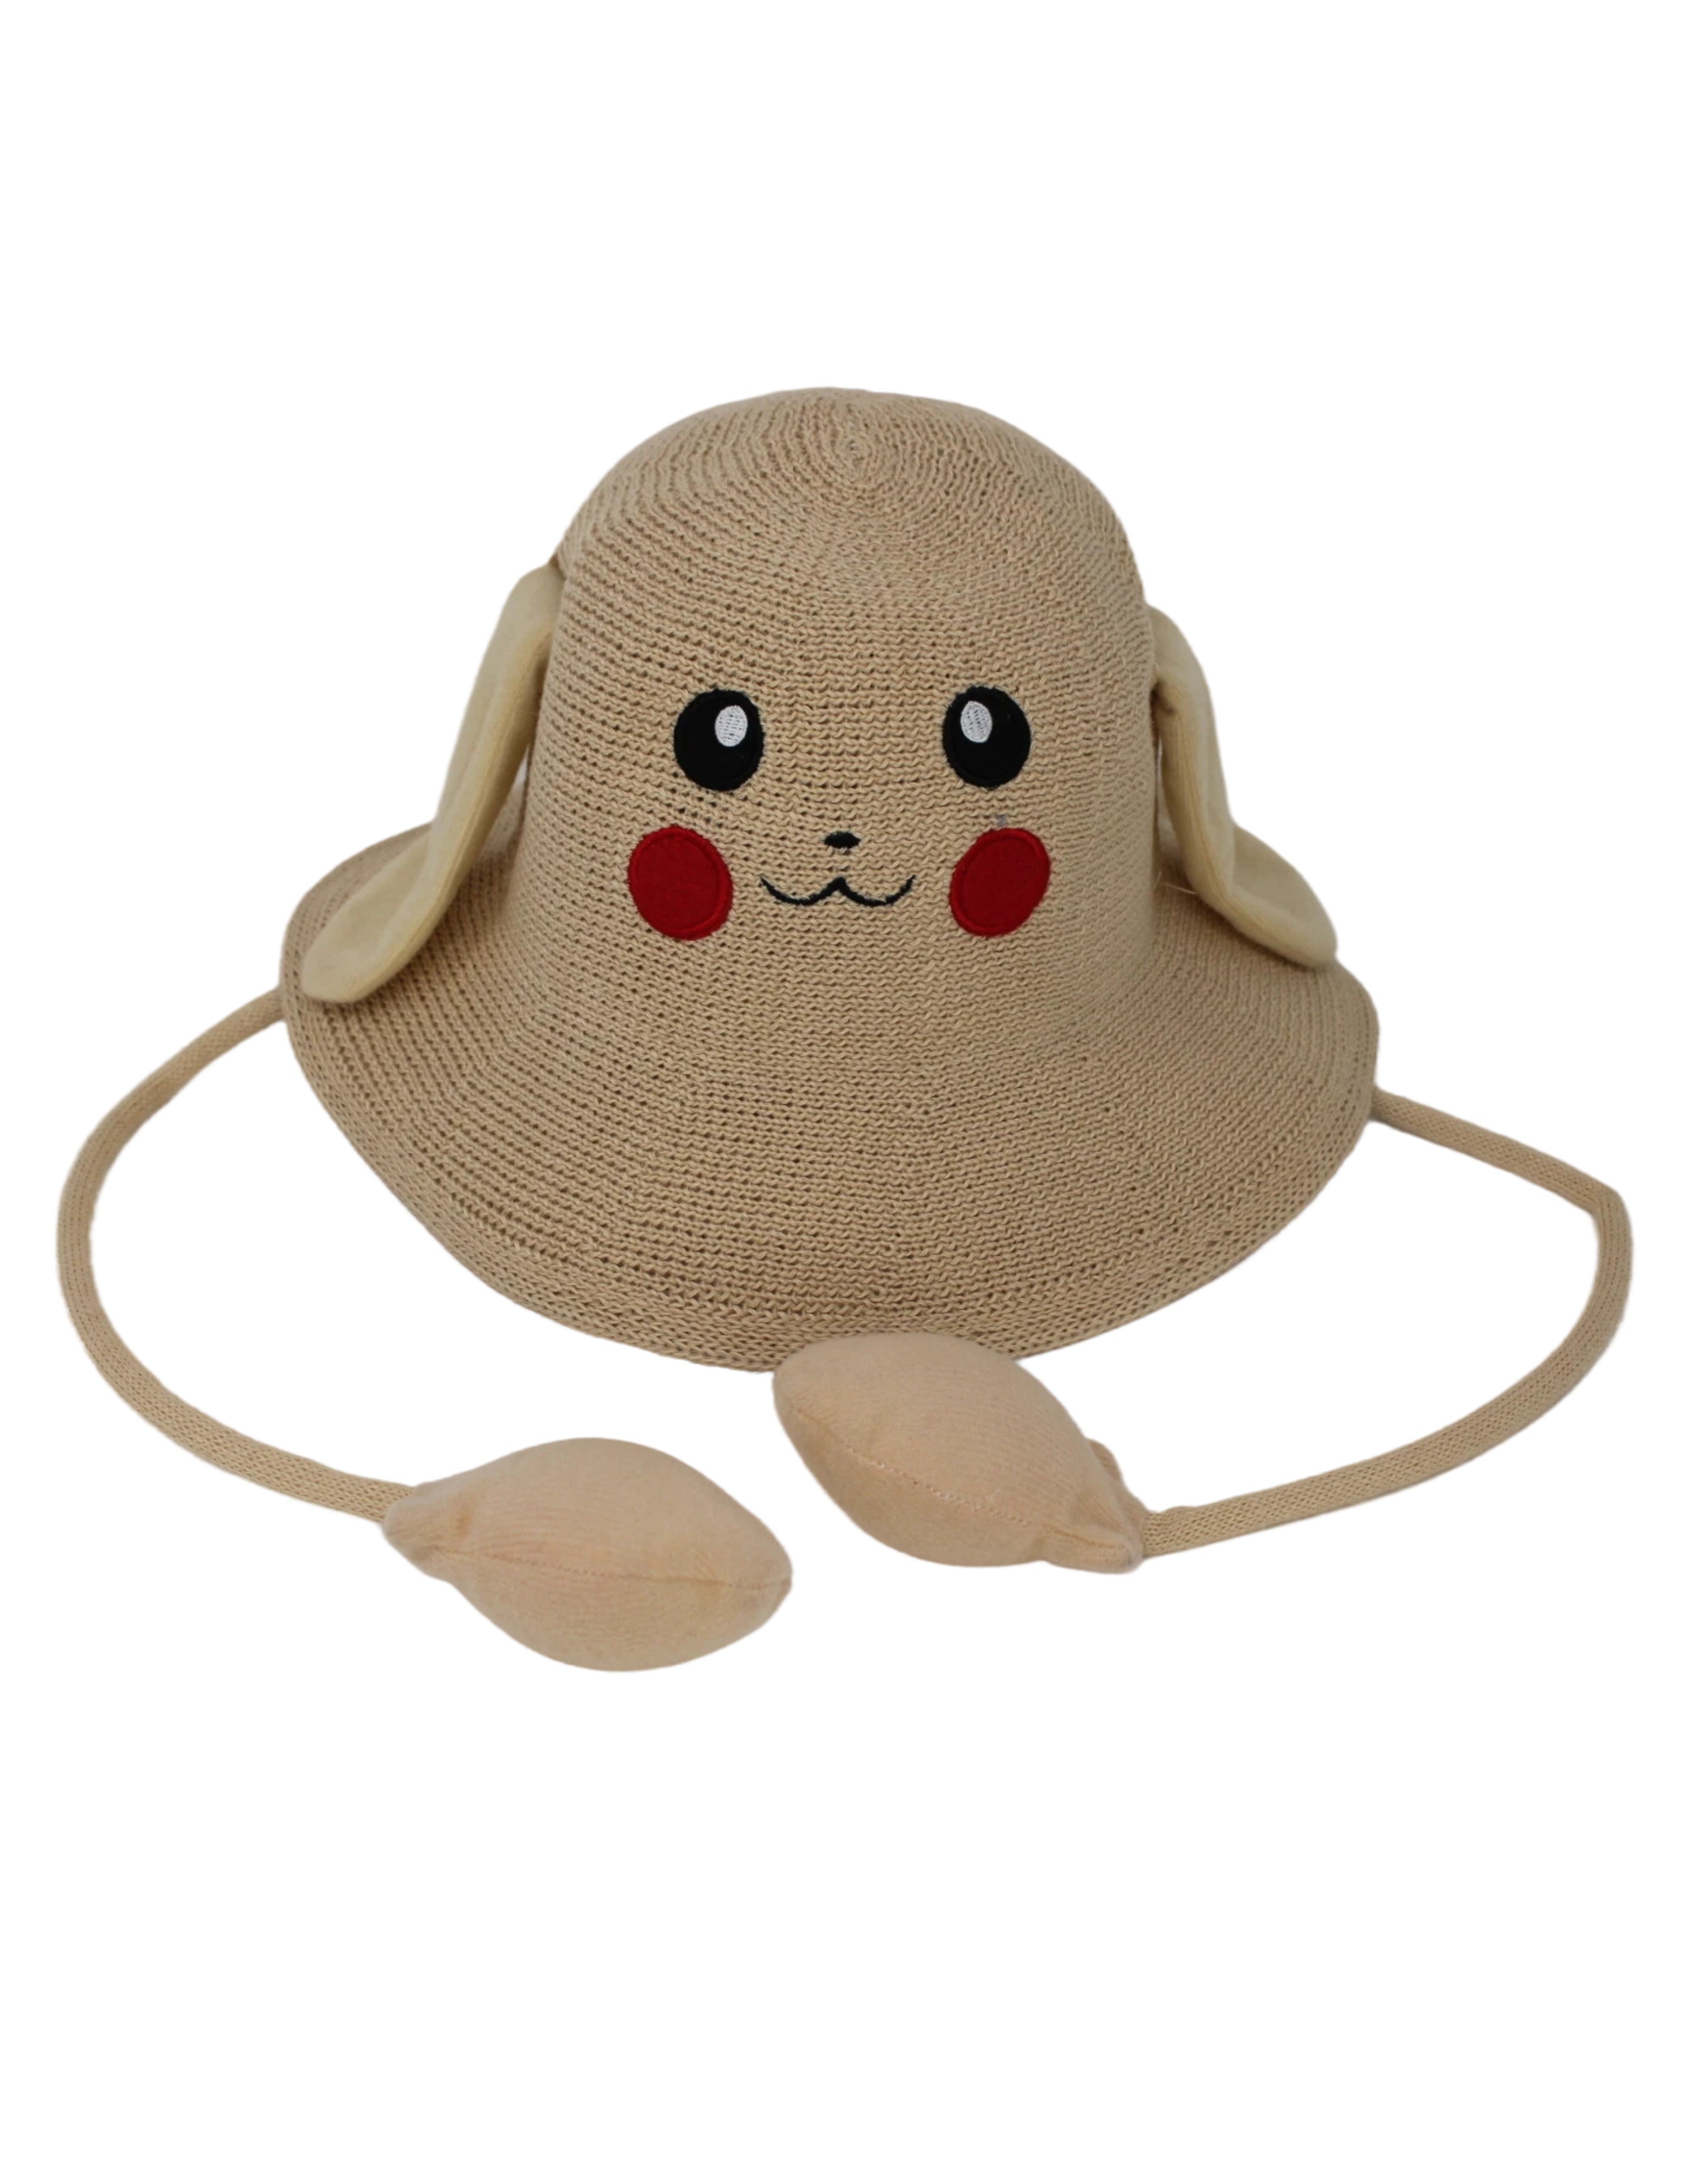 Pikachu Pop Up Ears Hat